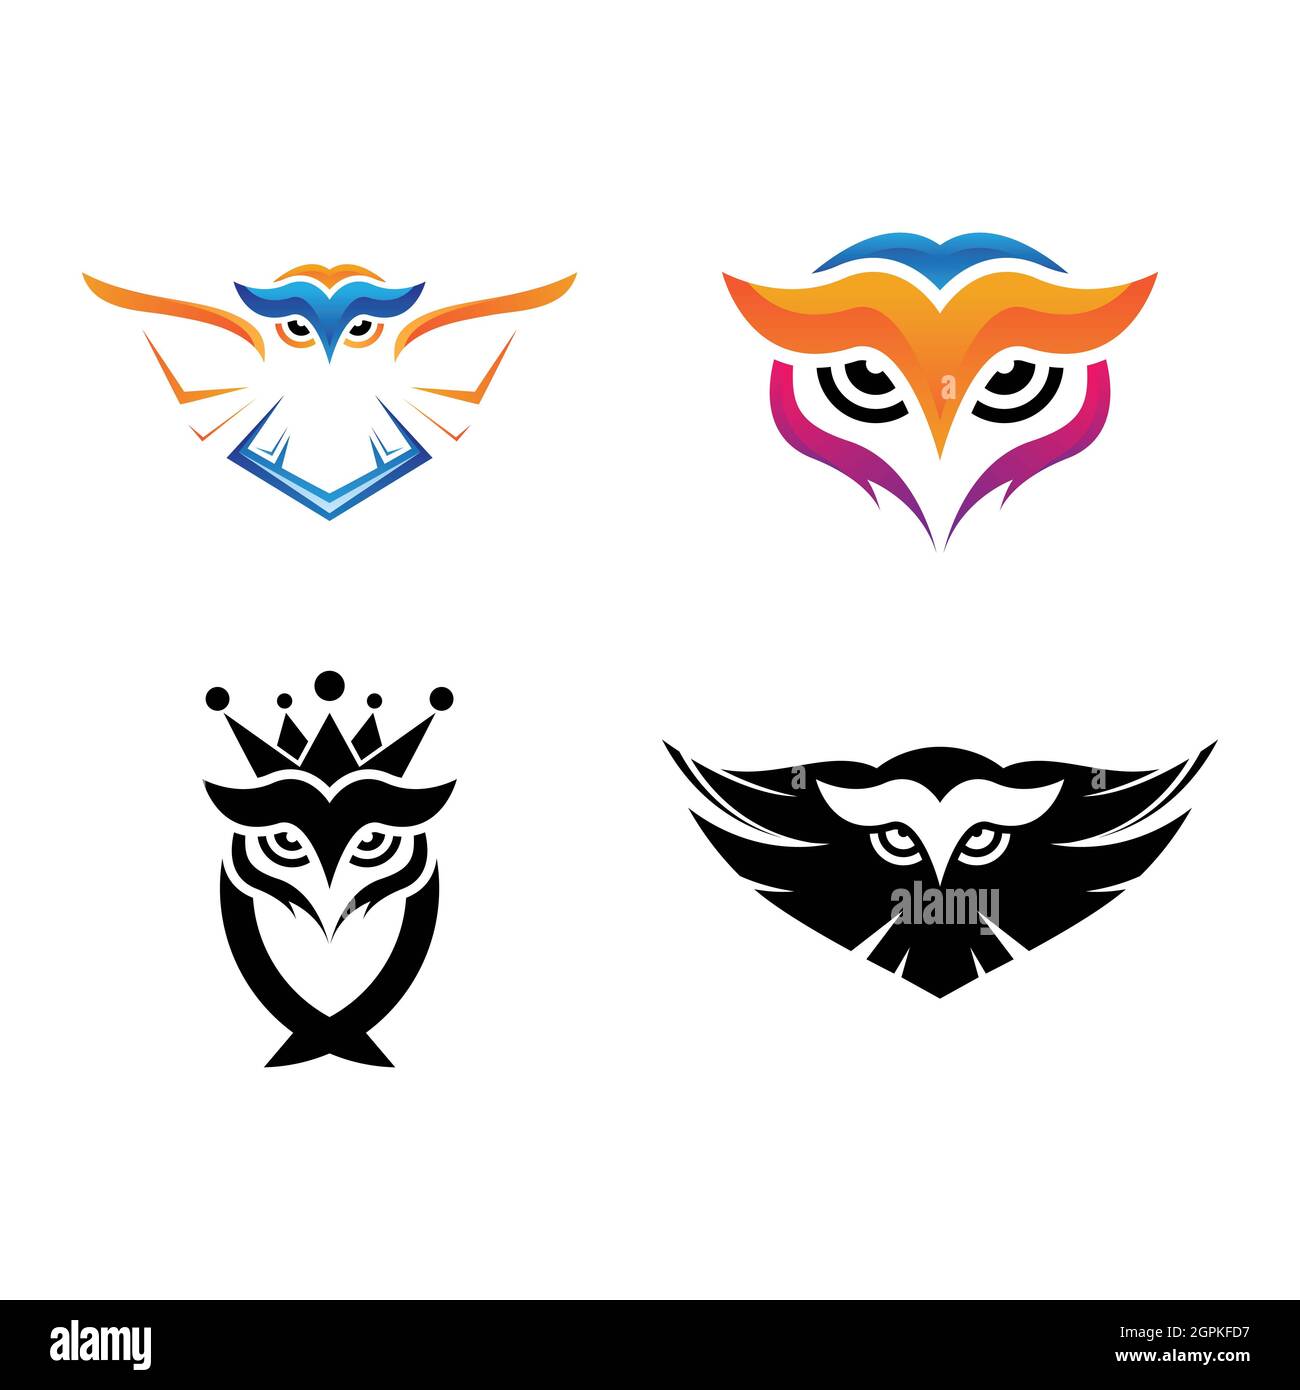 Modèle de logo Owl motif vectoriel d'ensemble d'icônes Banque D'Images